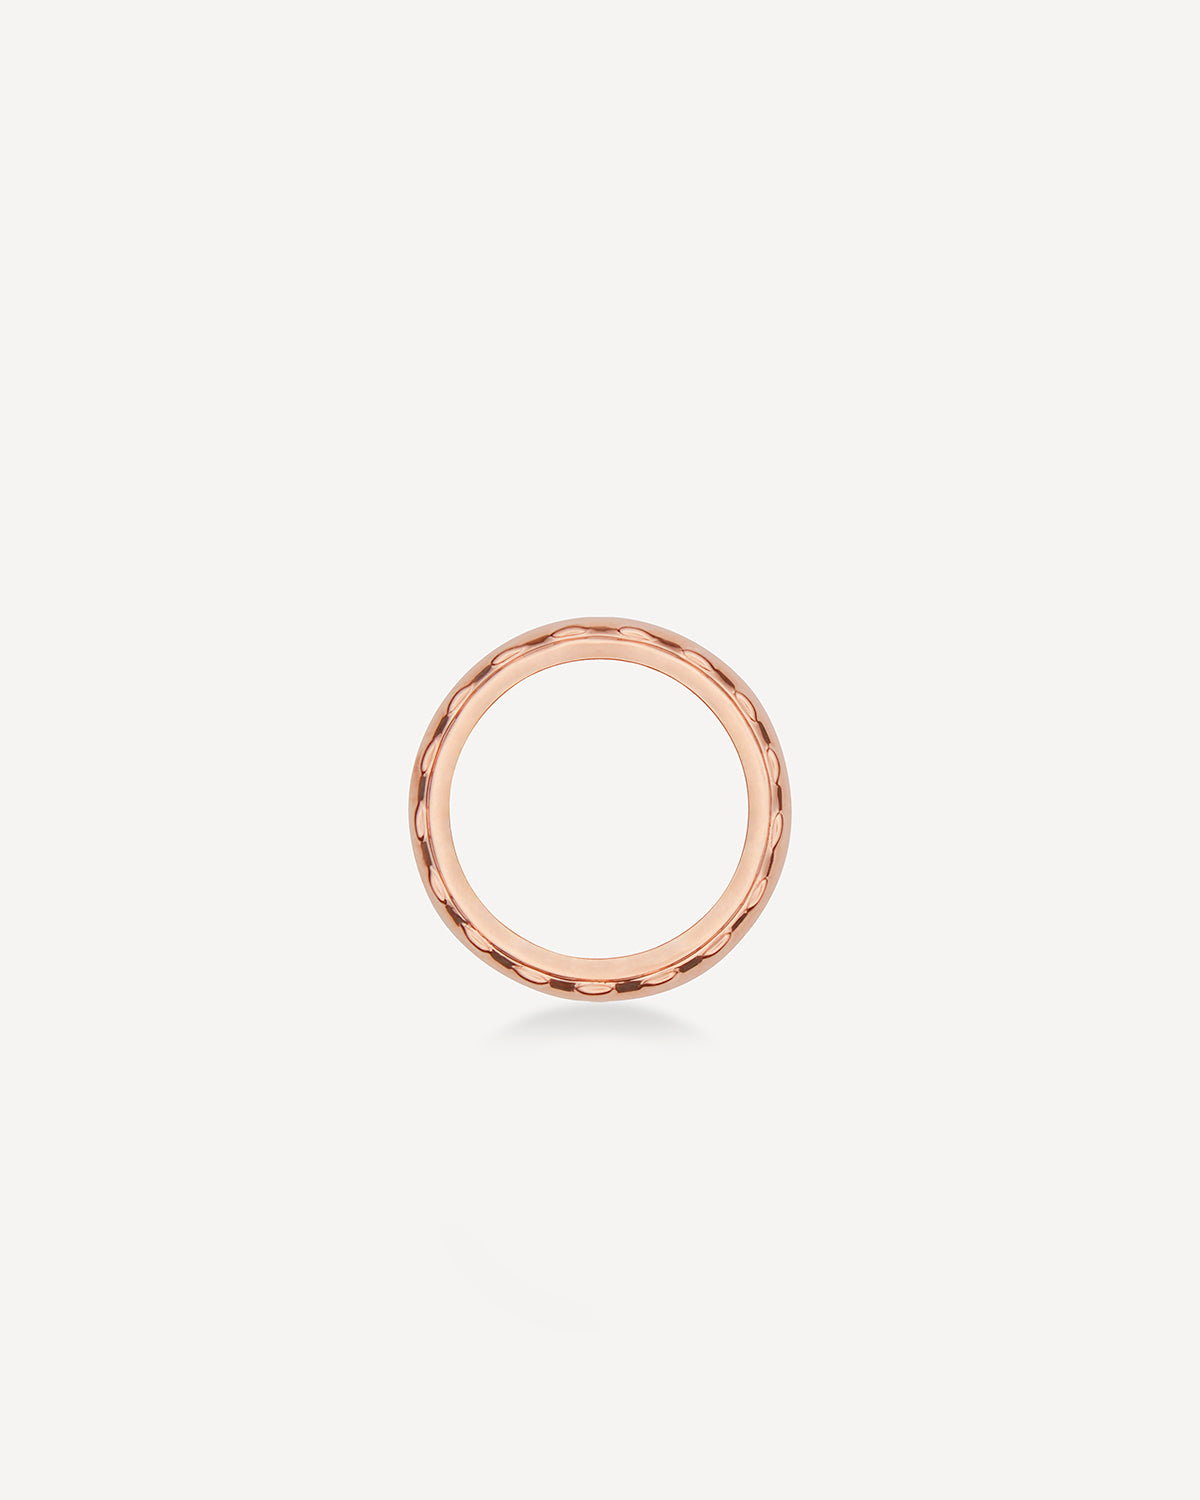 Cord Pinky Ring, ローズゴールド